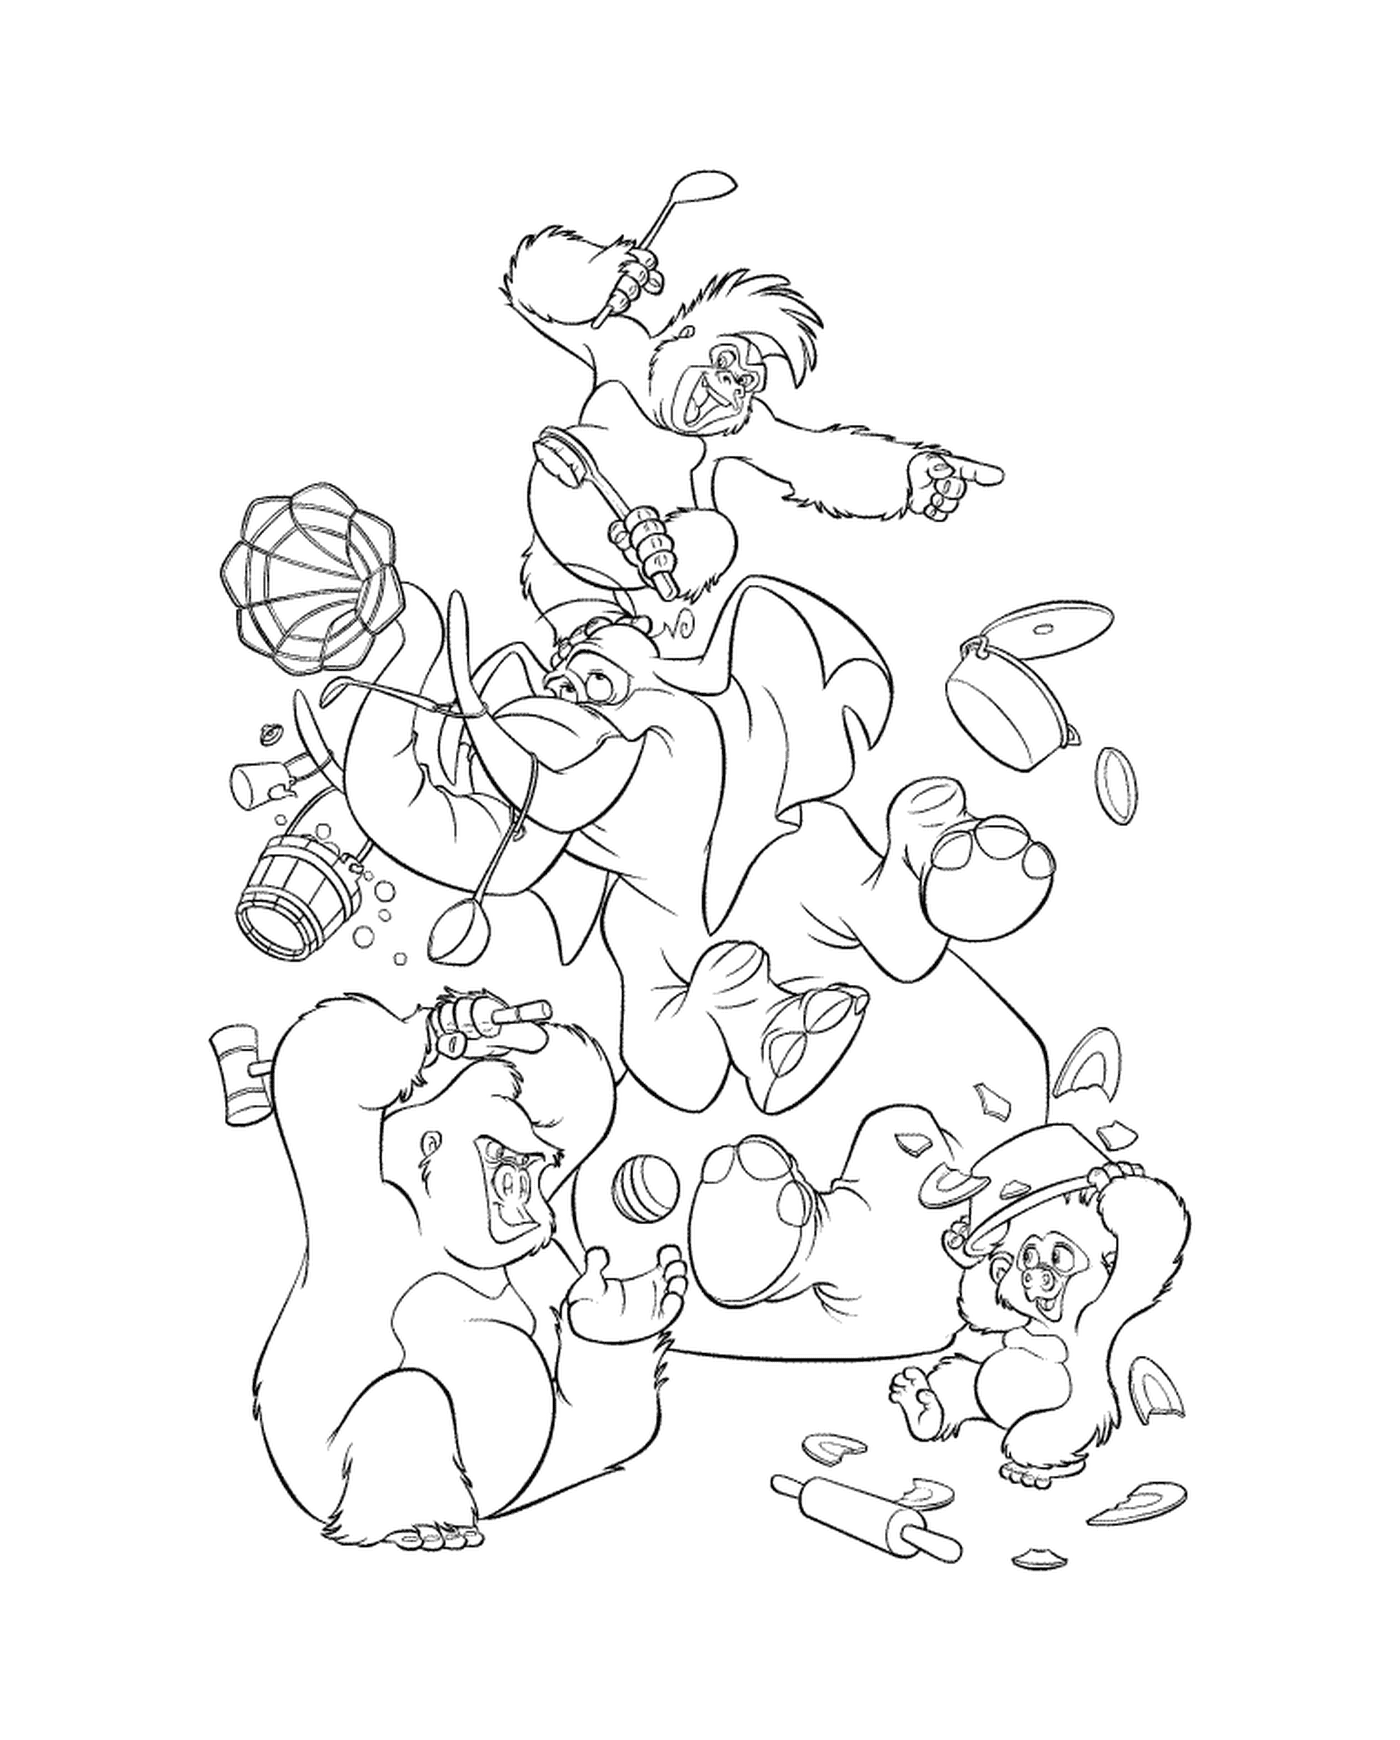  Grupo de oso jugando con un frisbee 